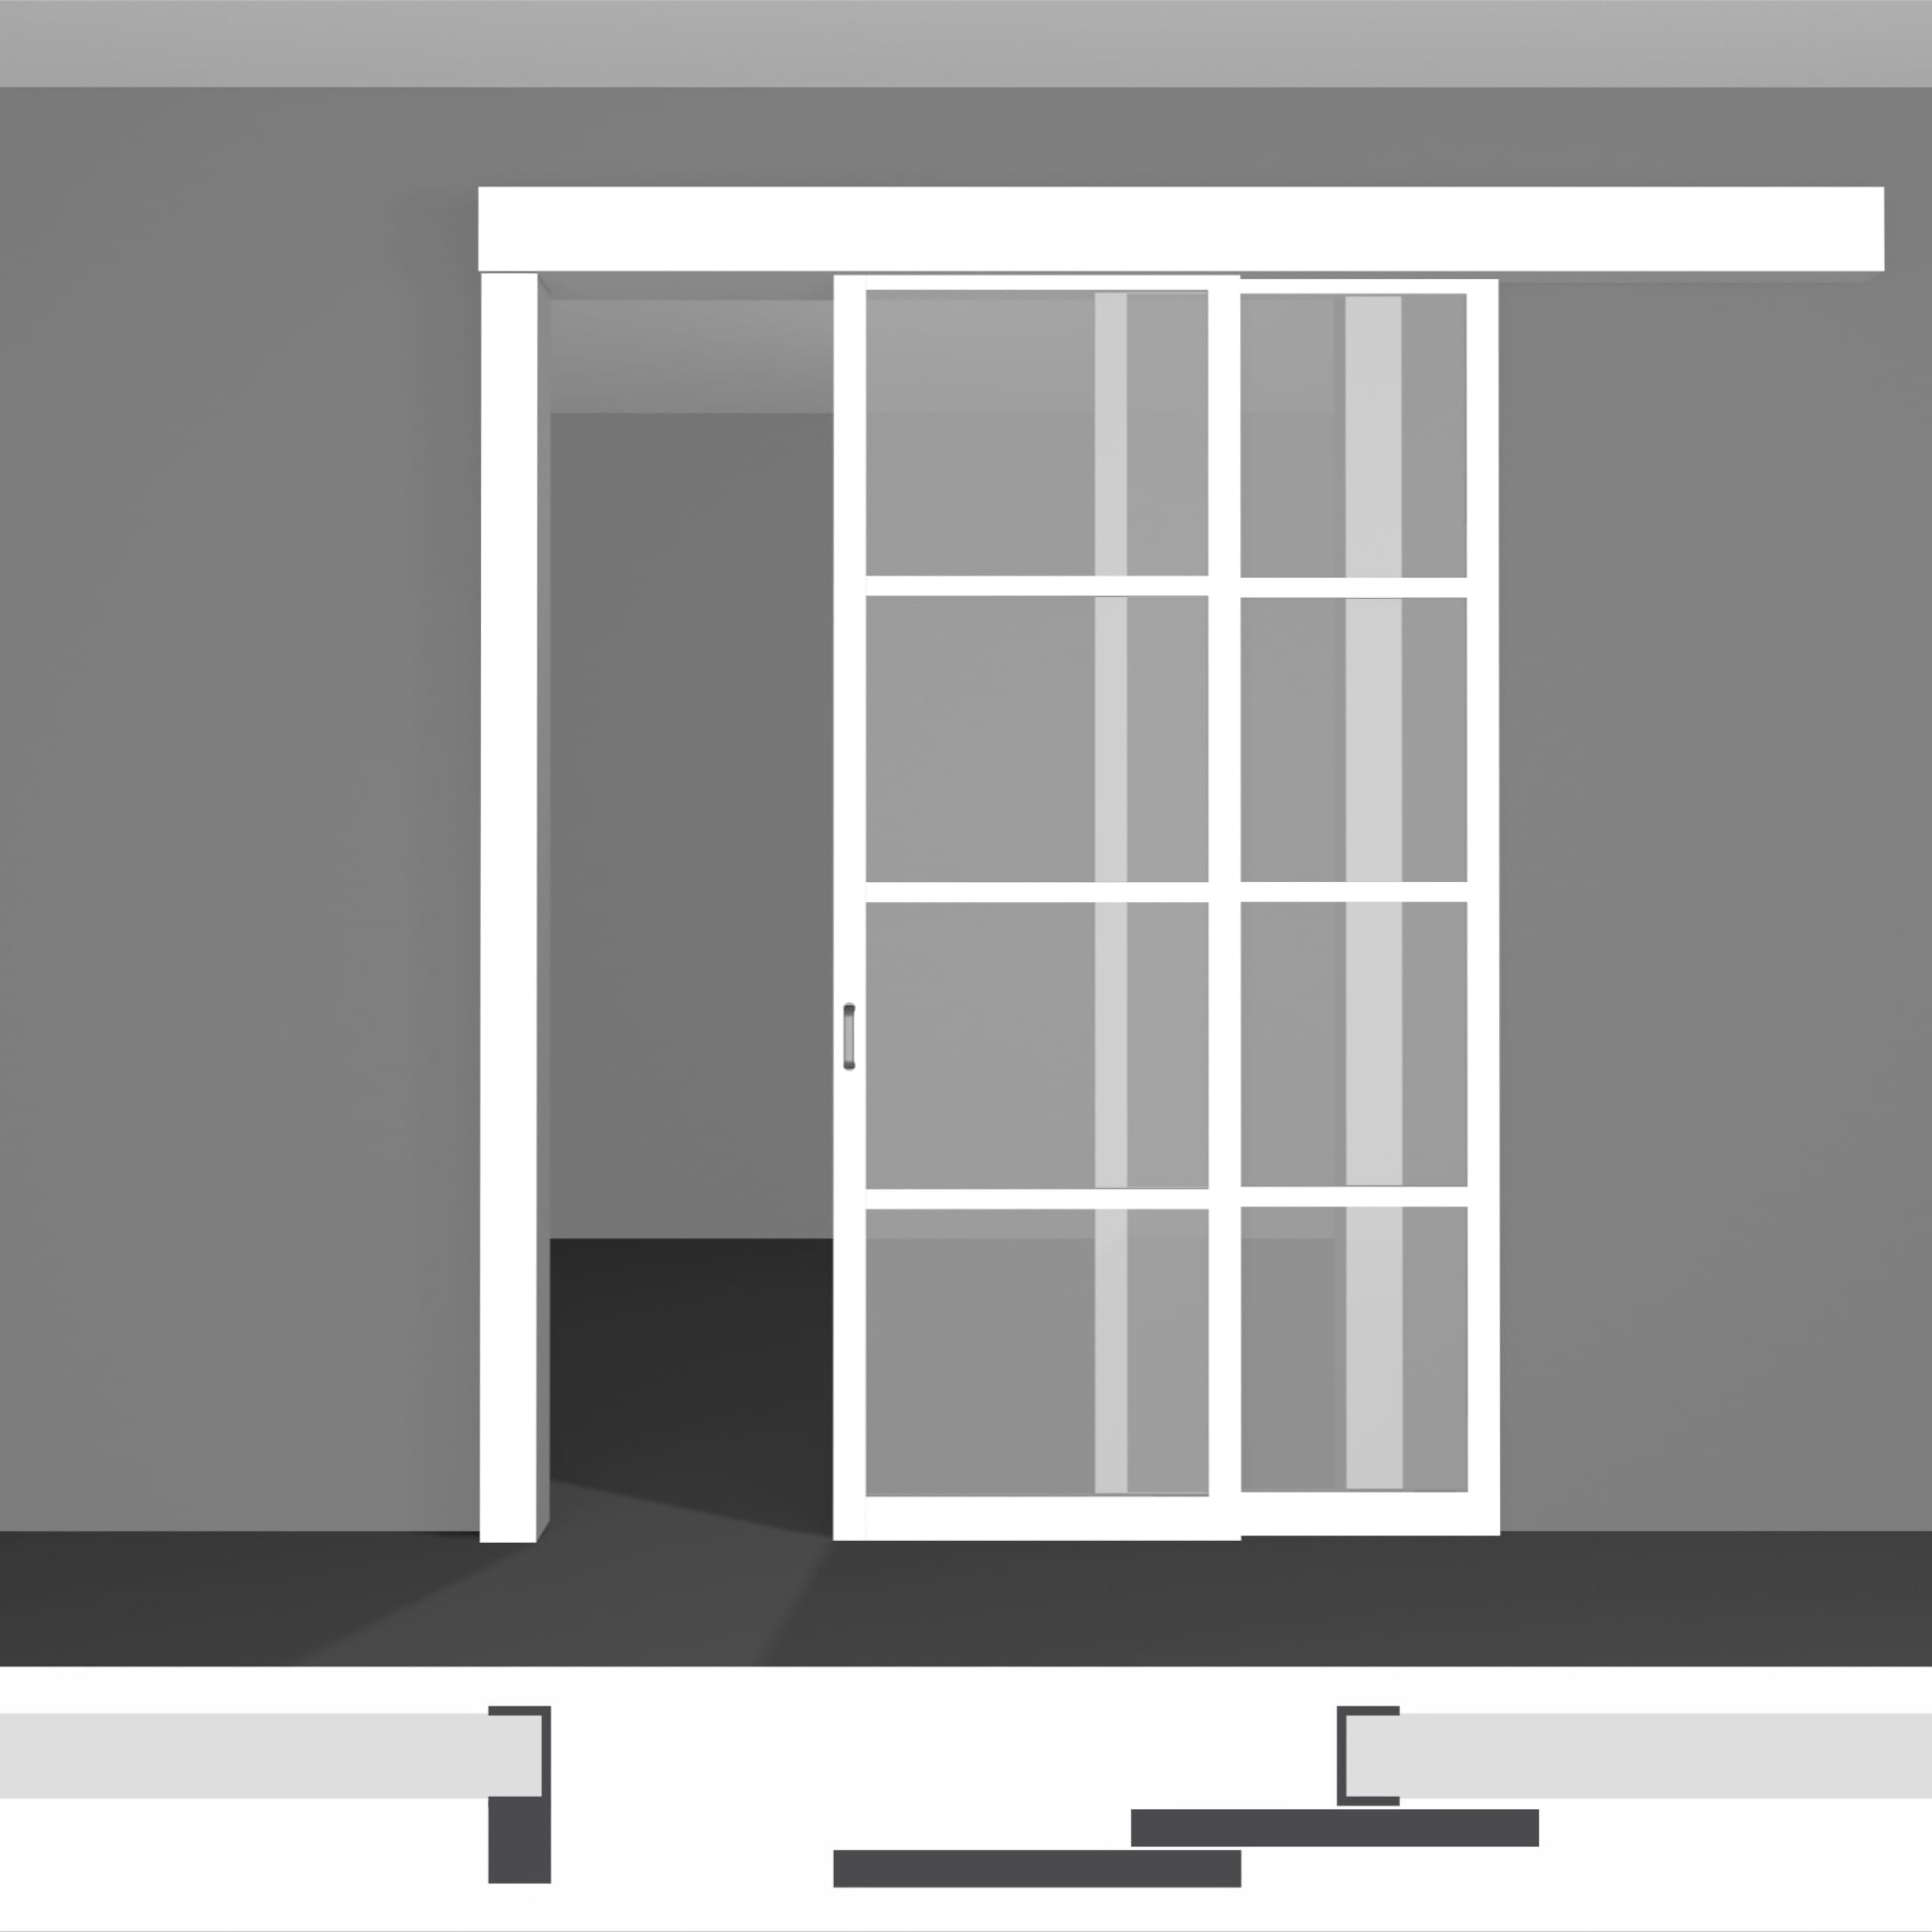 Межкомнатная перегородка для зонирования пространства в доме, готова к заказу - P02.1 • два полотна вдоль стены • экошпон светлых оттенков